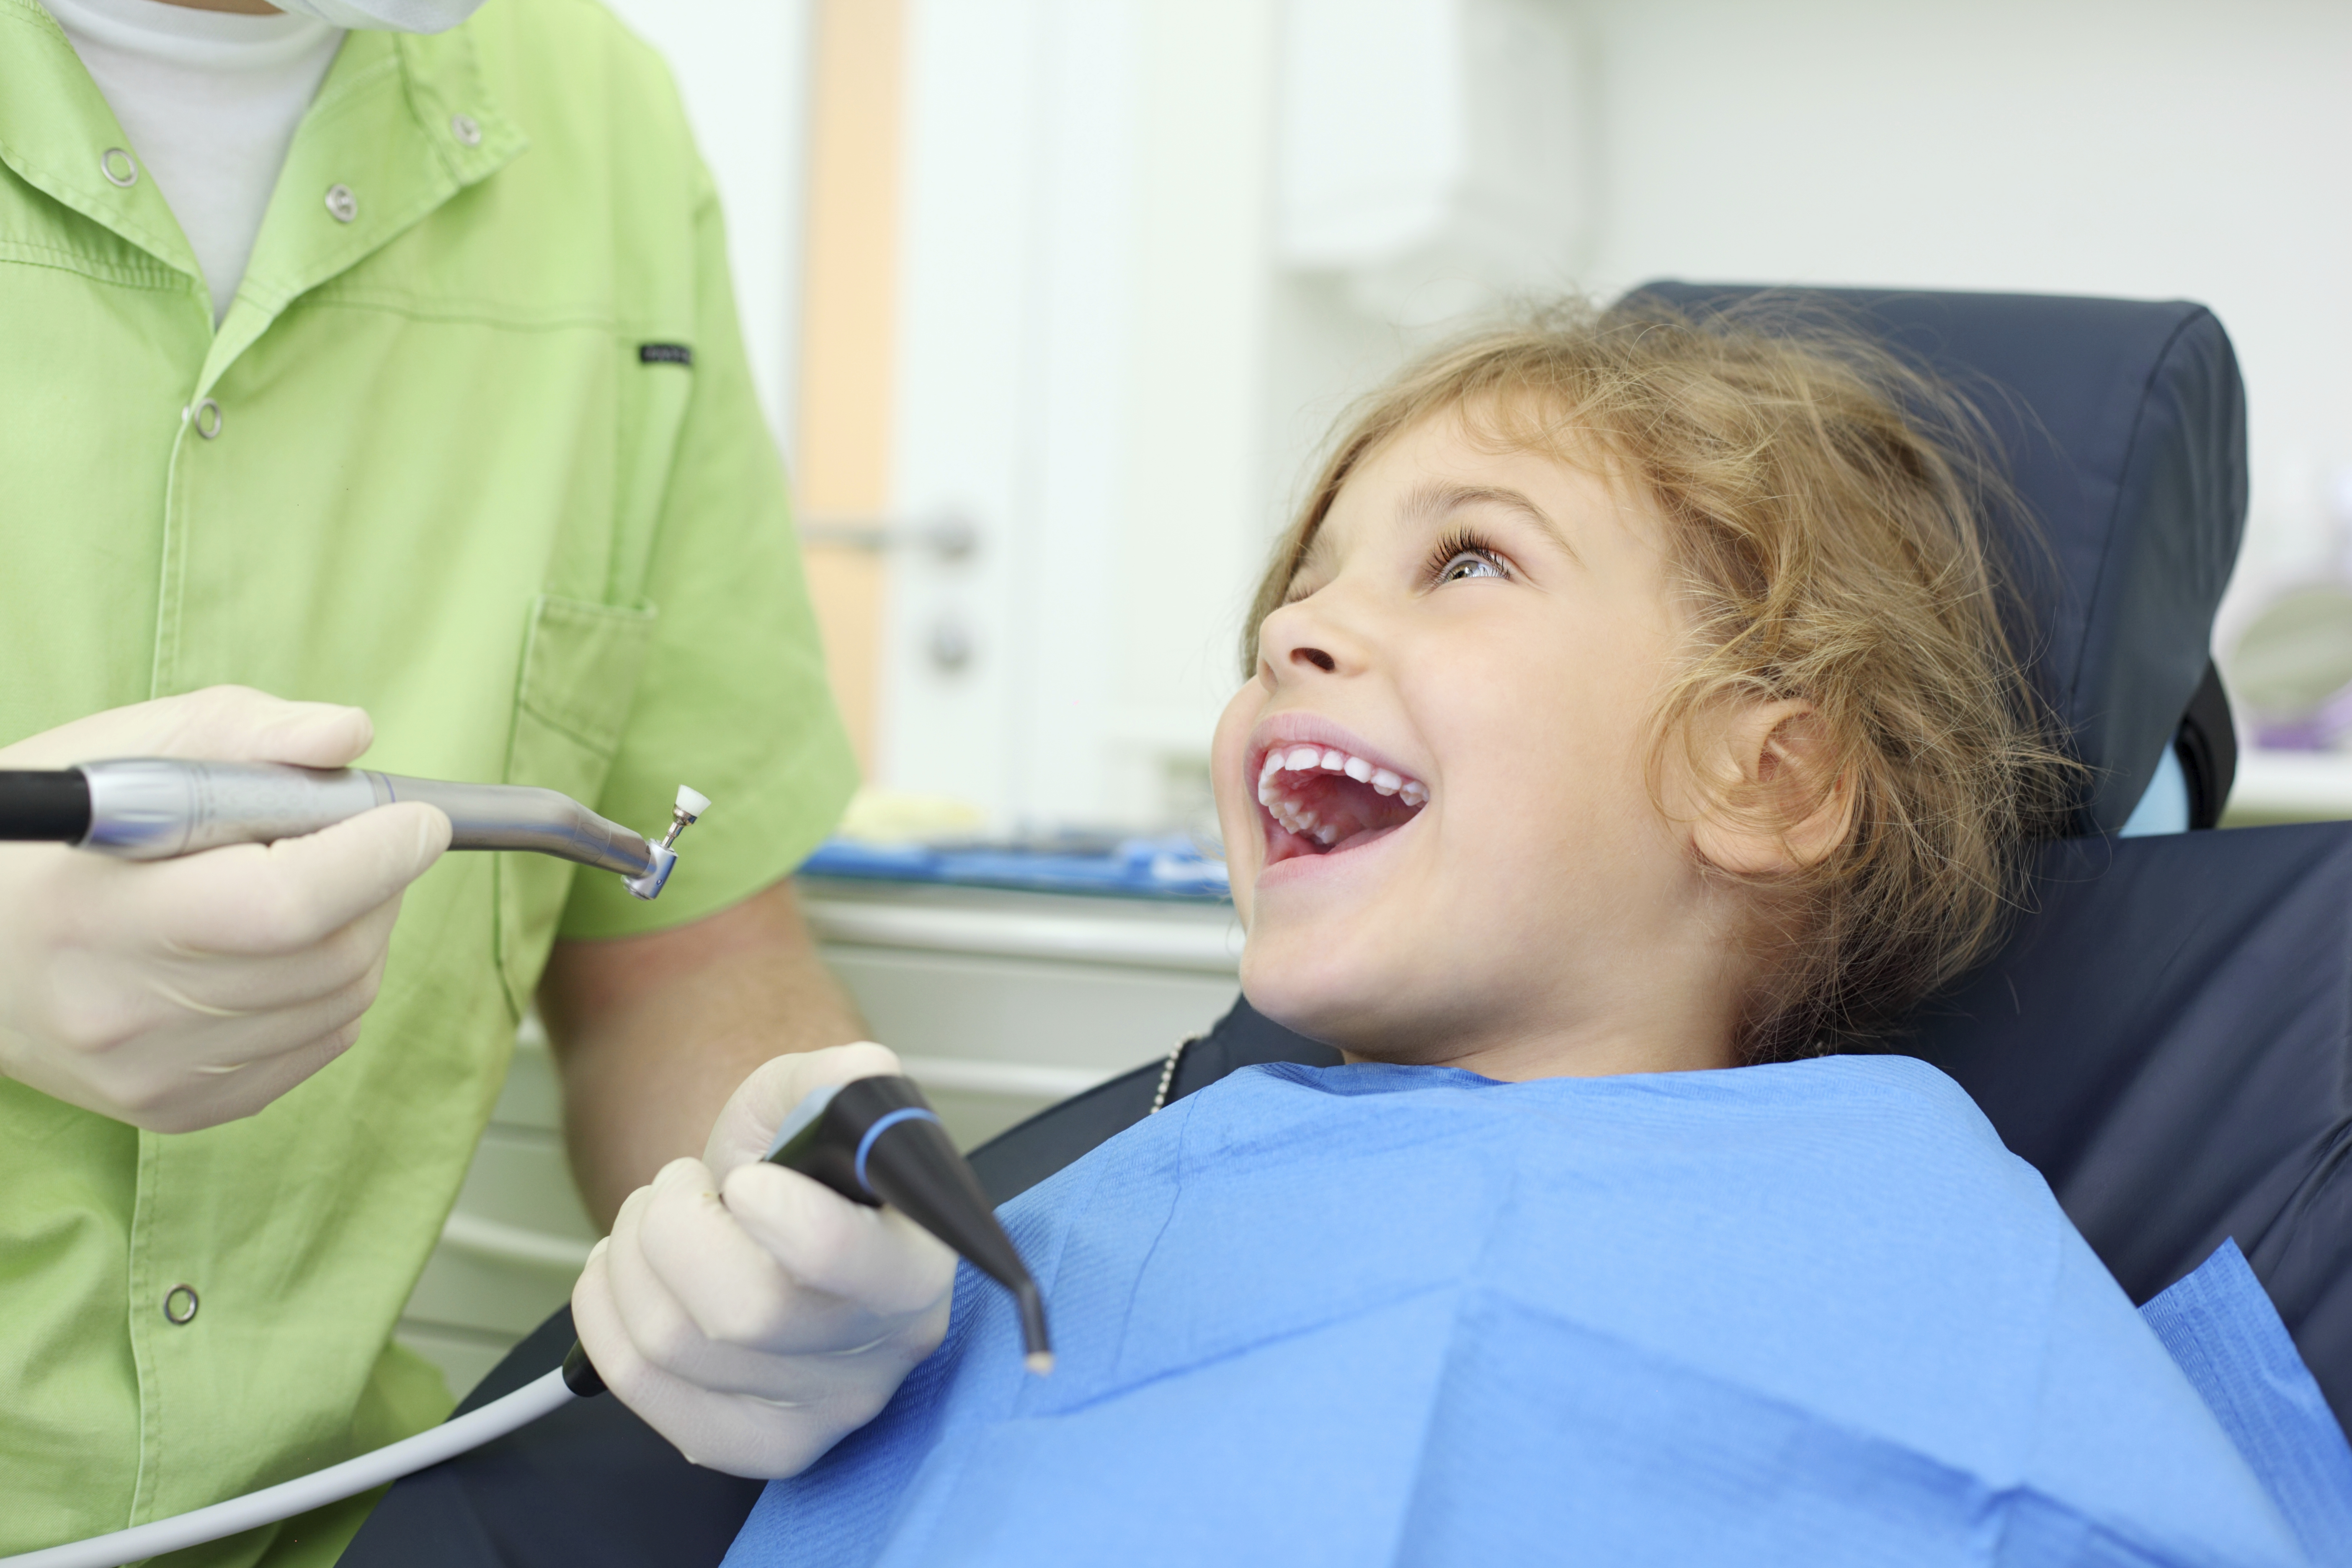 http://www.catonsvilledentalcare.com/wp-content/uploads/2014/08/pediatric-dentist.jpg